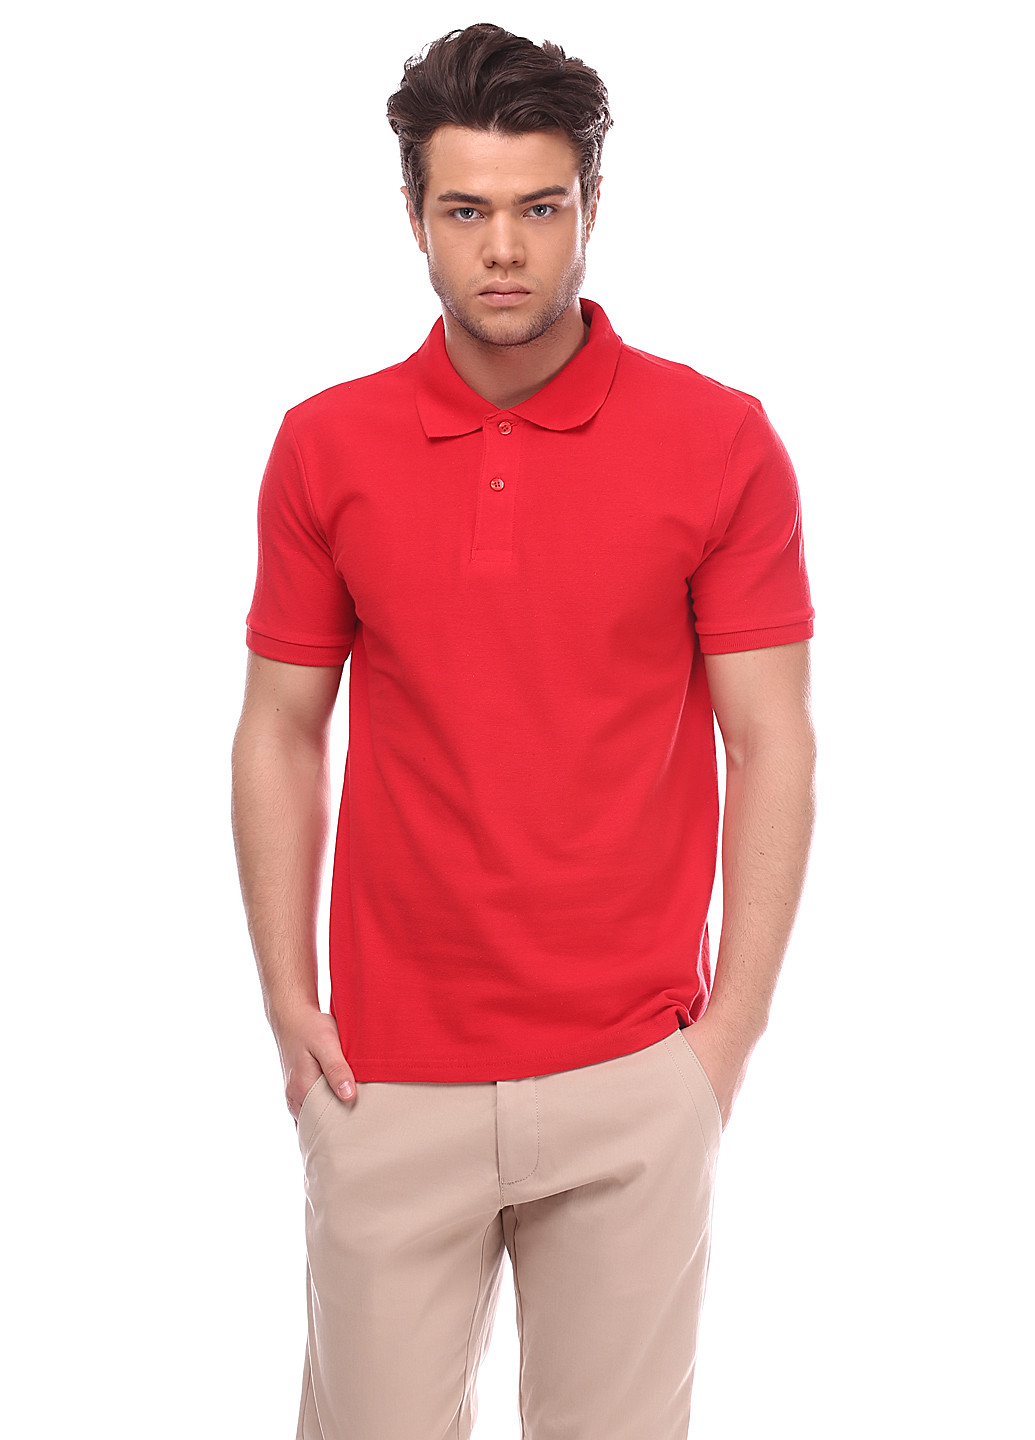 Красная футболка-поло для мужчин Keya однотонная